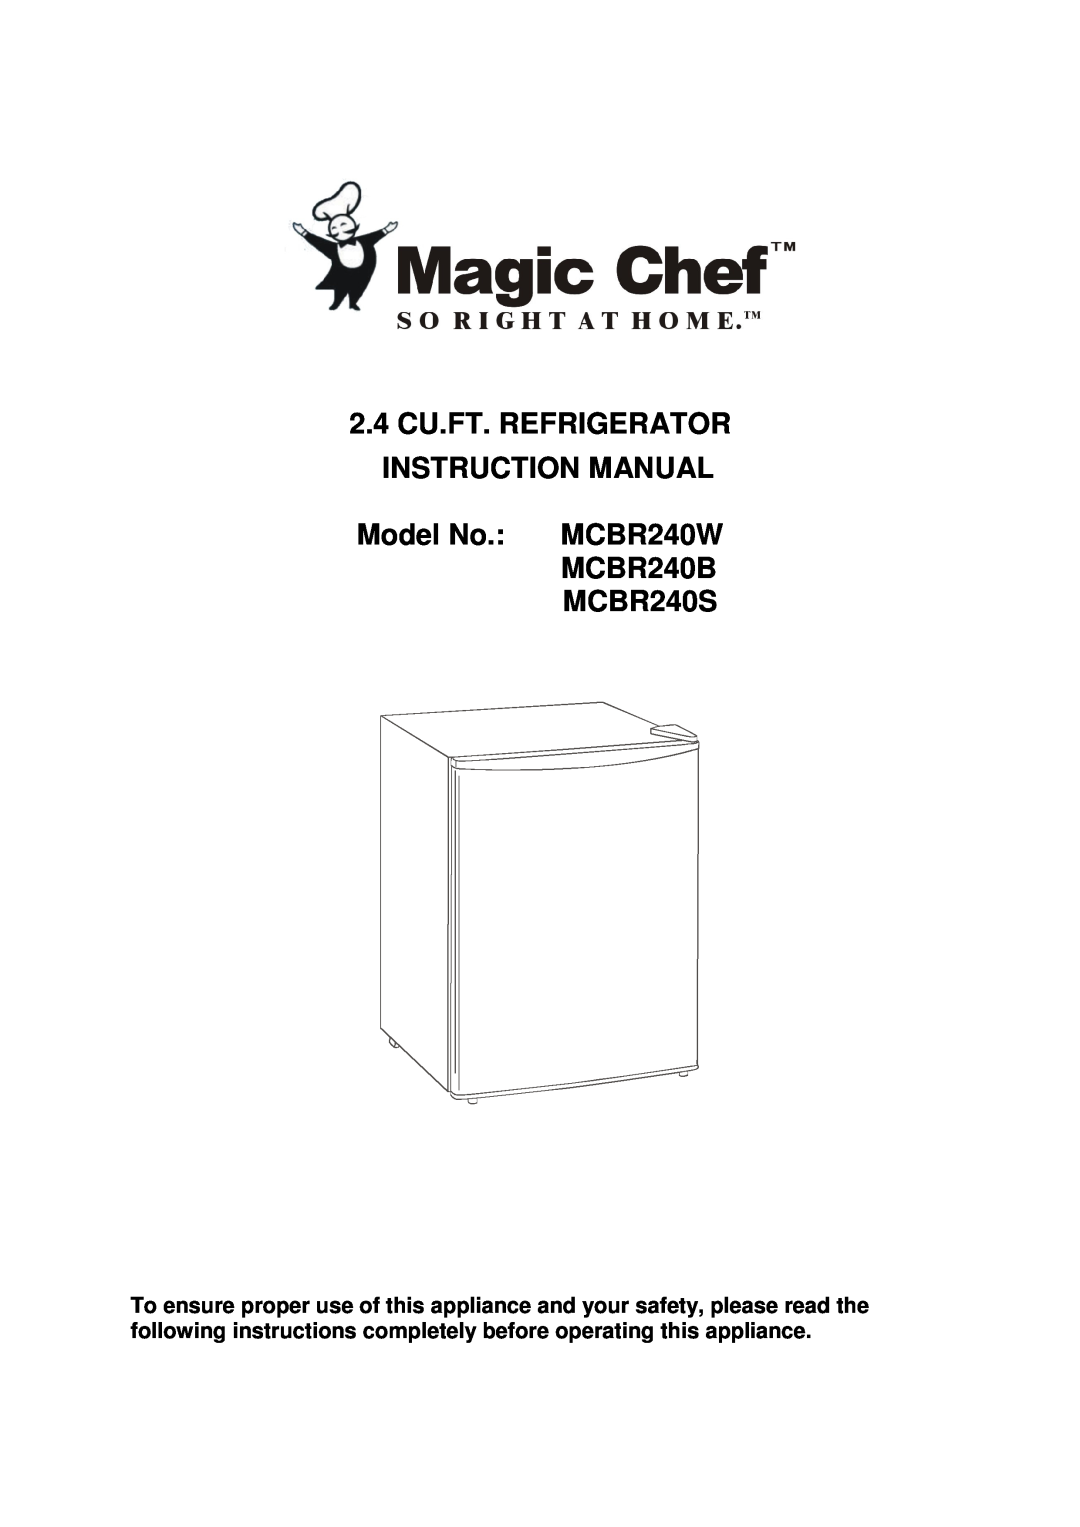 Magic Chef instruction manual Model No. MCBR240W MCBR240B MCBR240S 